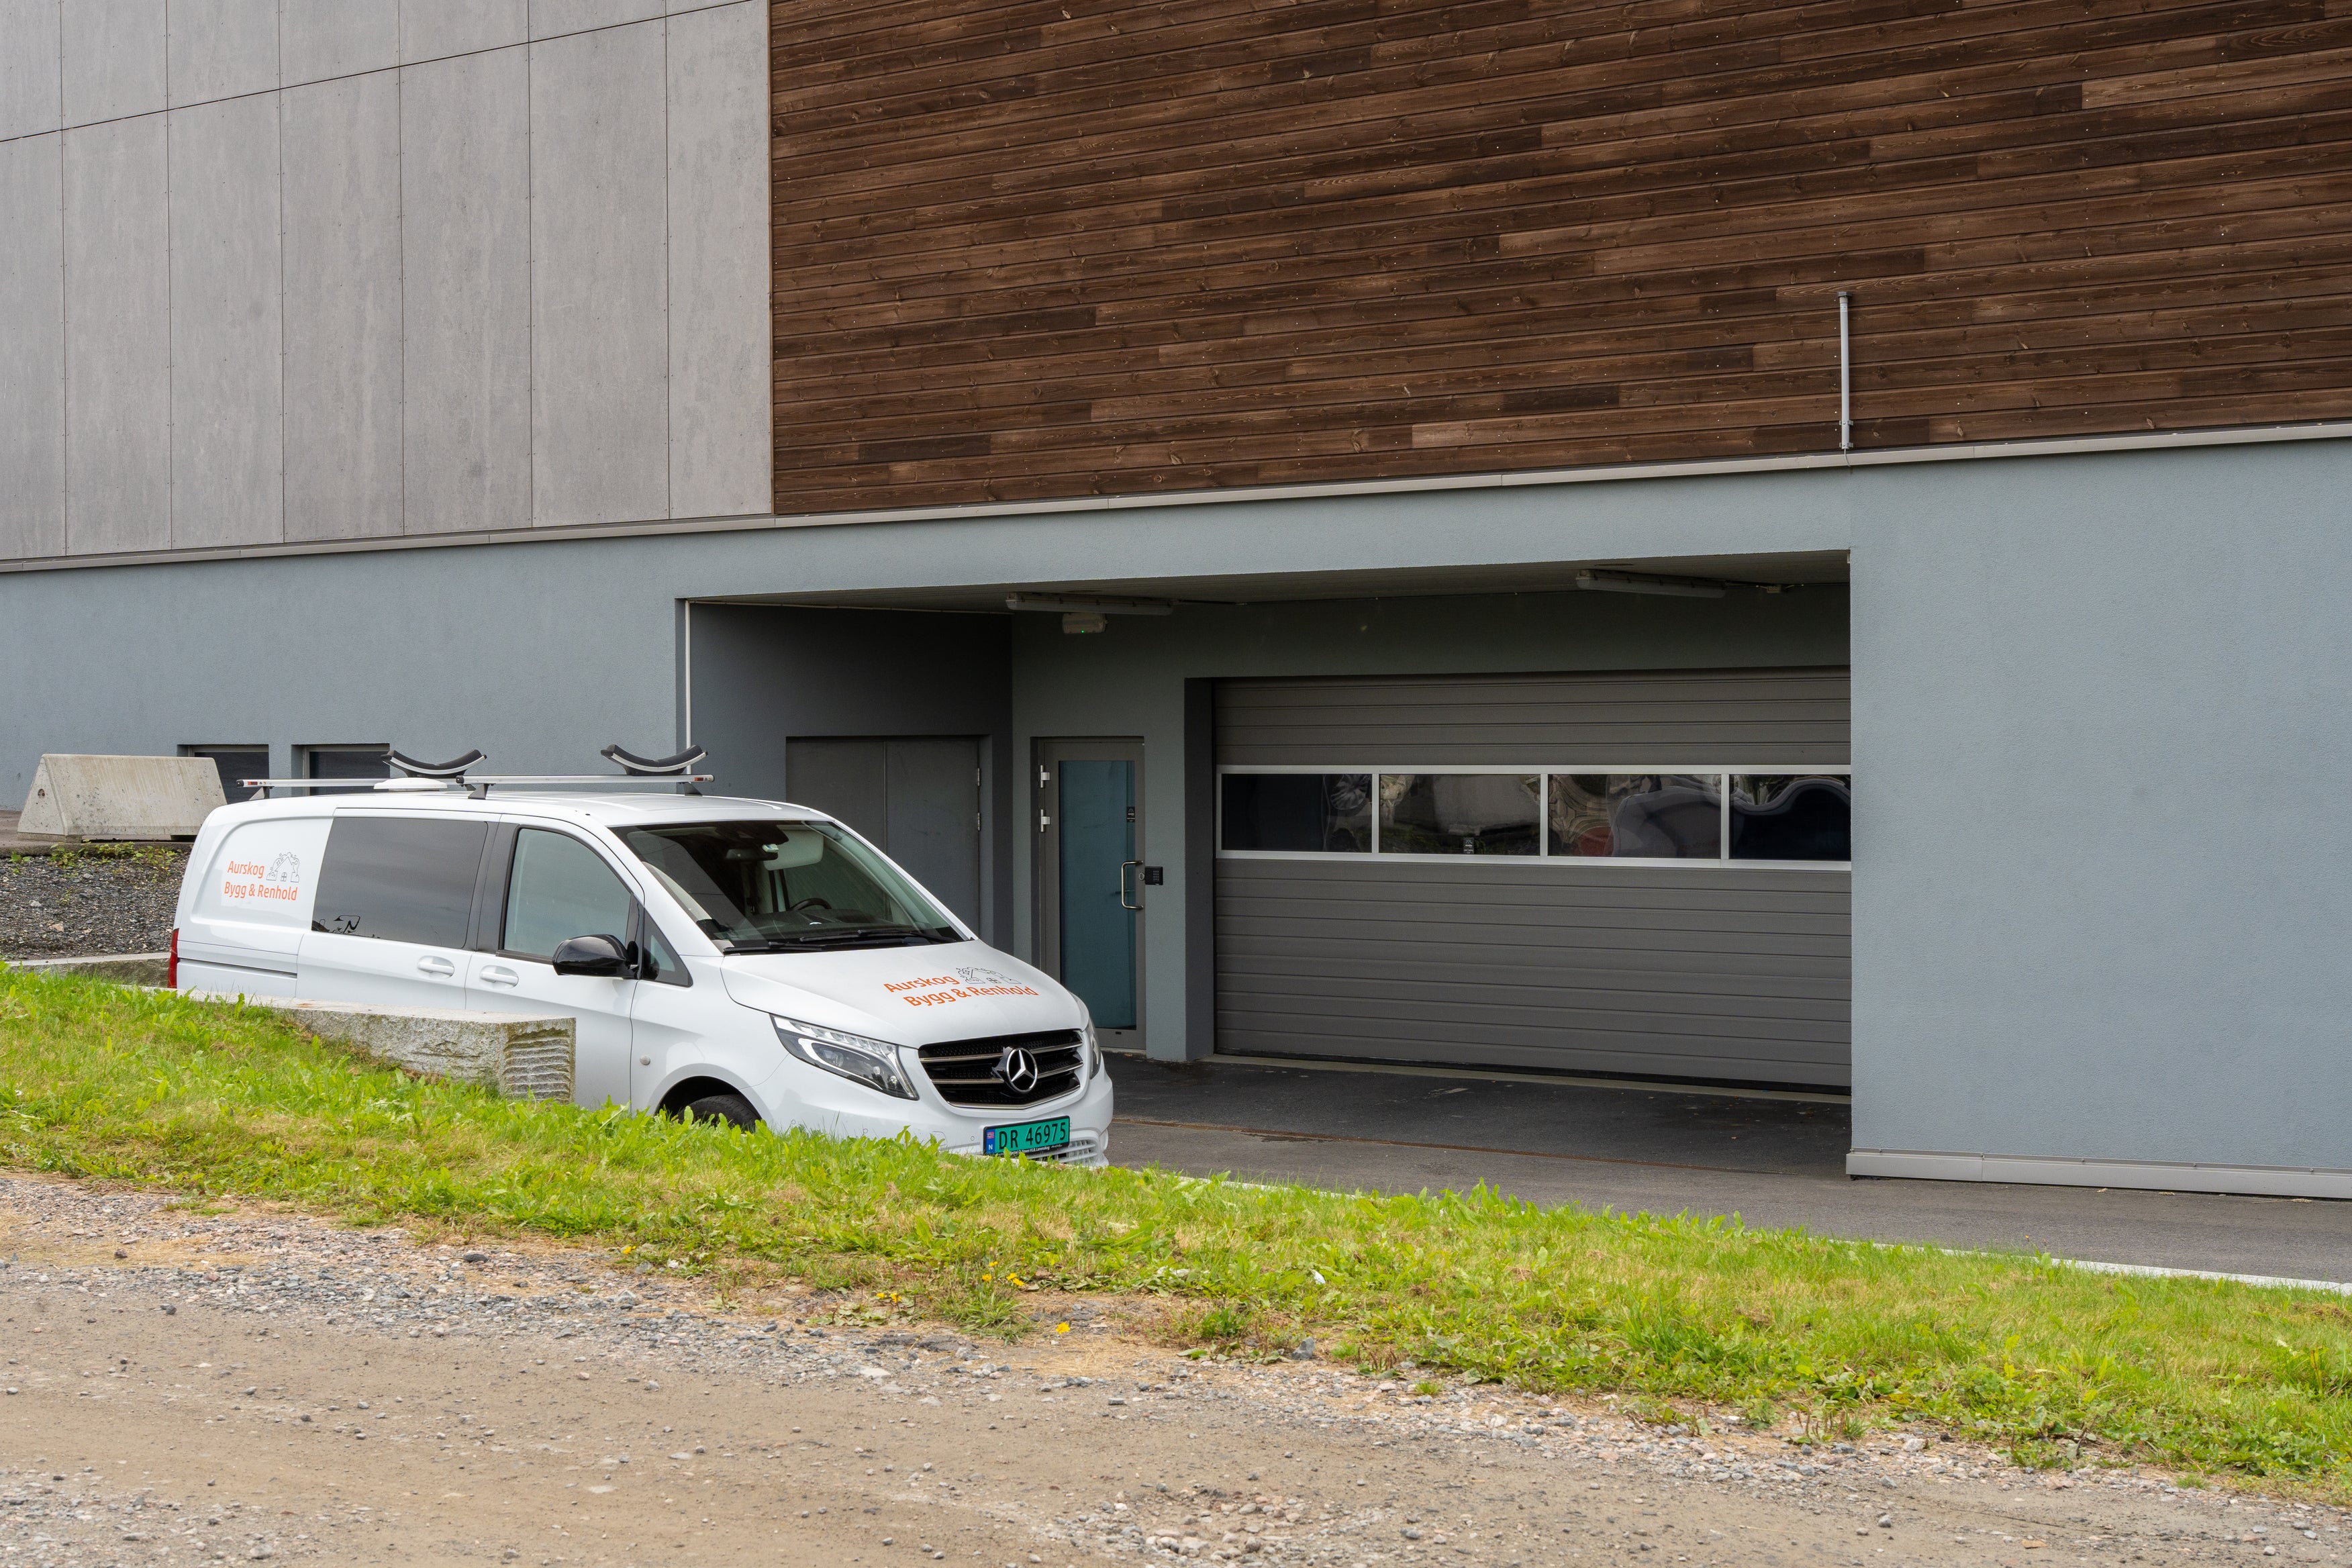 En hvit varebil parkert utenfor et moderne bygg med grå- og trepanelvegger, ved siden av en sammenrullet garasjeport i metall på parkeringsplassene. Det er her Aurskog Bygg & Renholds Feiing finner sted.